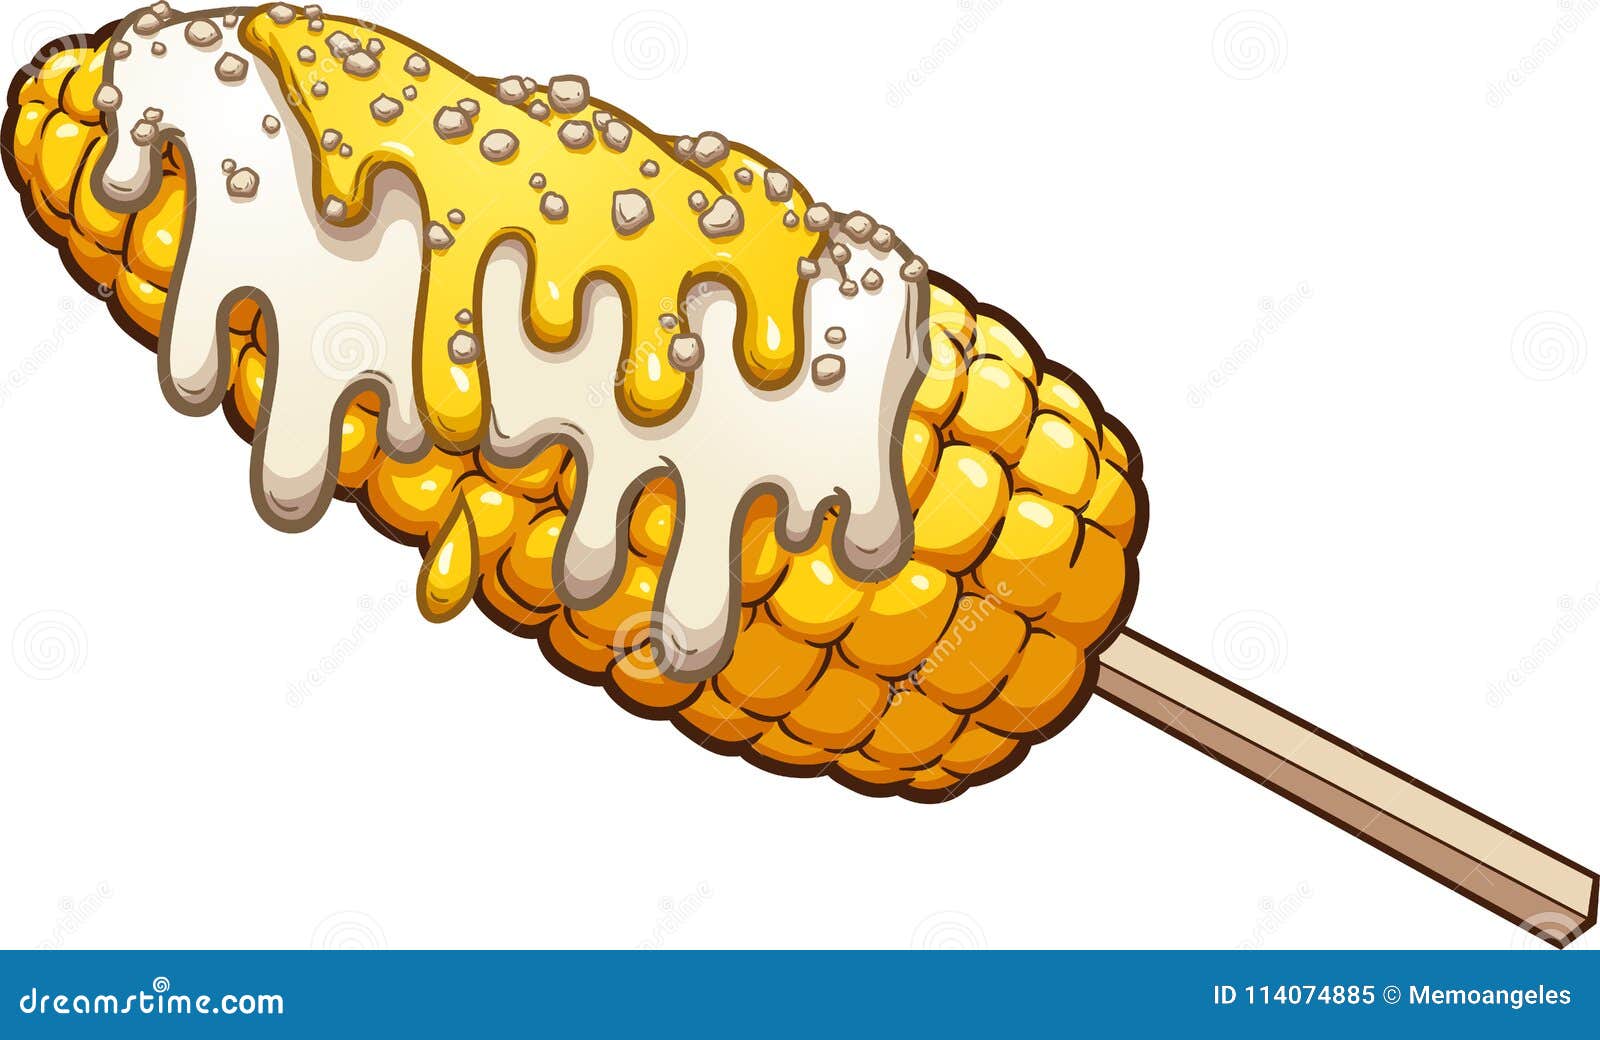 Corn Cob Cartoon Stock Illustrations – 2,037 Corn Cob Cartoon Stock  Illustrations, Vectors & Clipart - Dreamstime